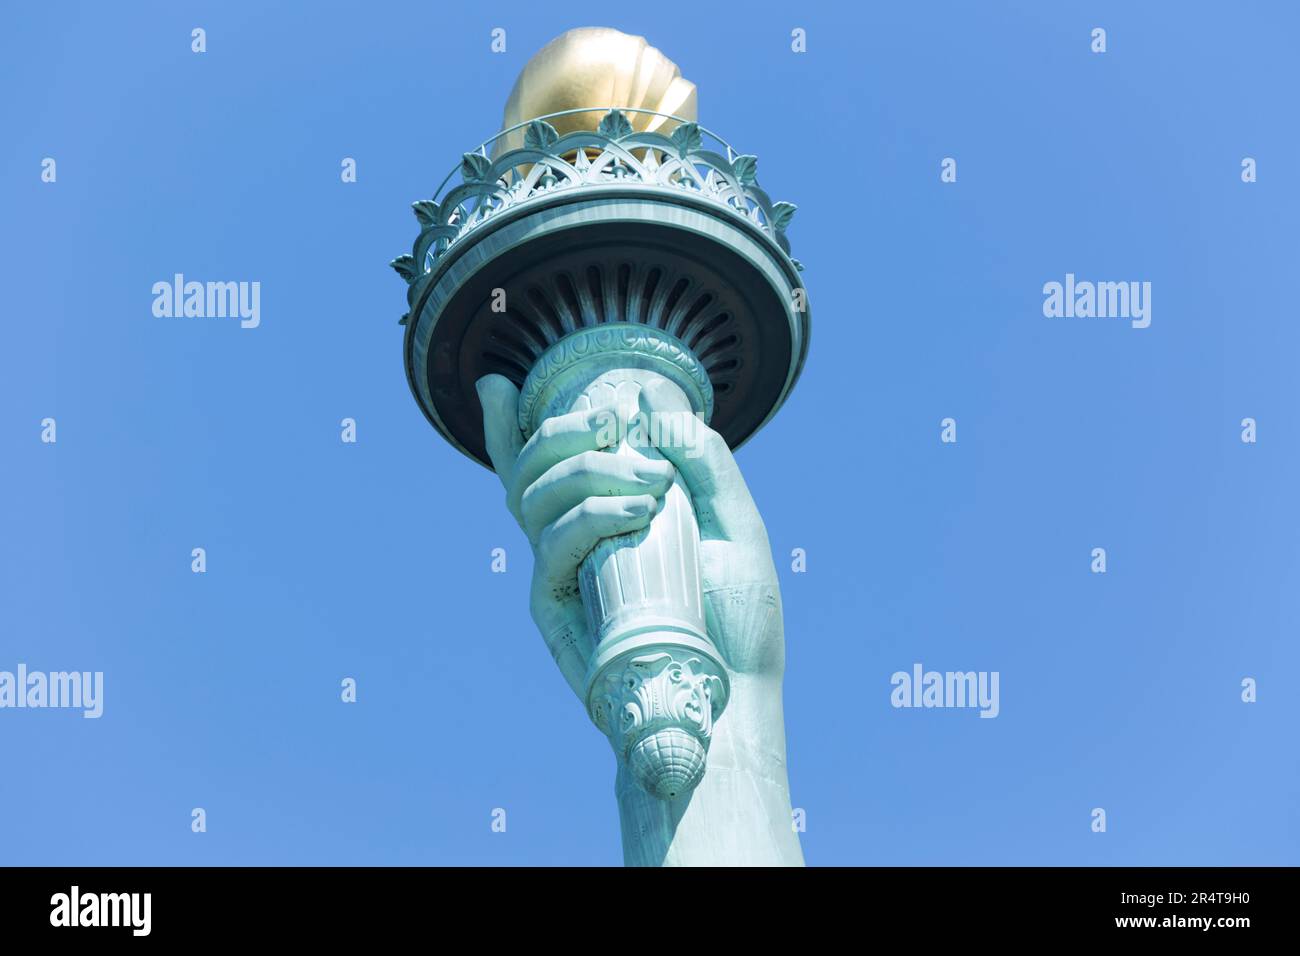 US, New York, primo piano della torcia sulla statua della libertà, isola della libertà. Foto Stock